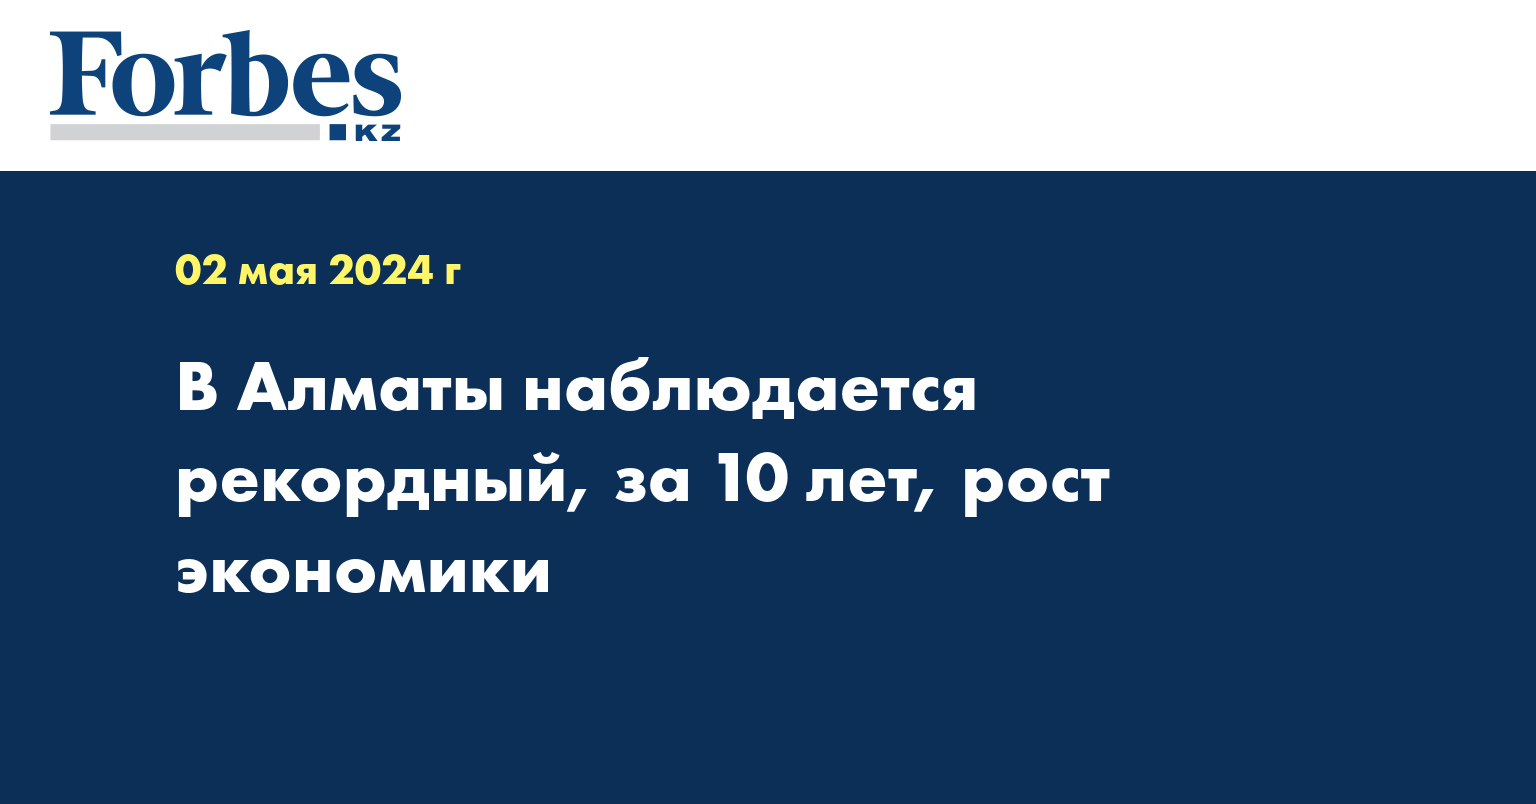 В Алматы наблюдается рекордный за последние 10 лет рост экономики 